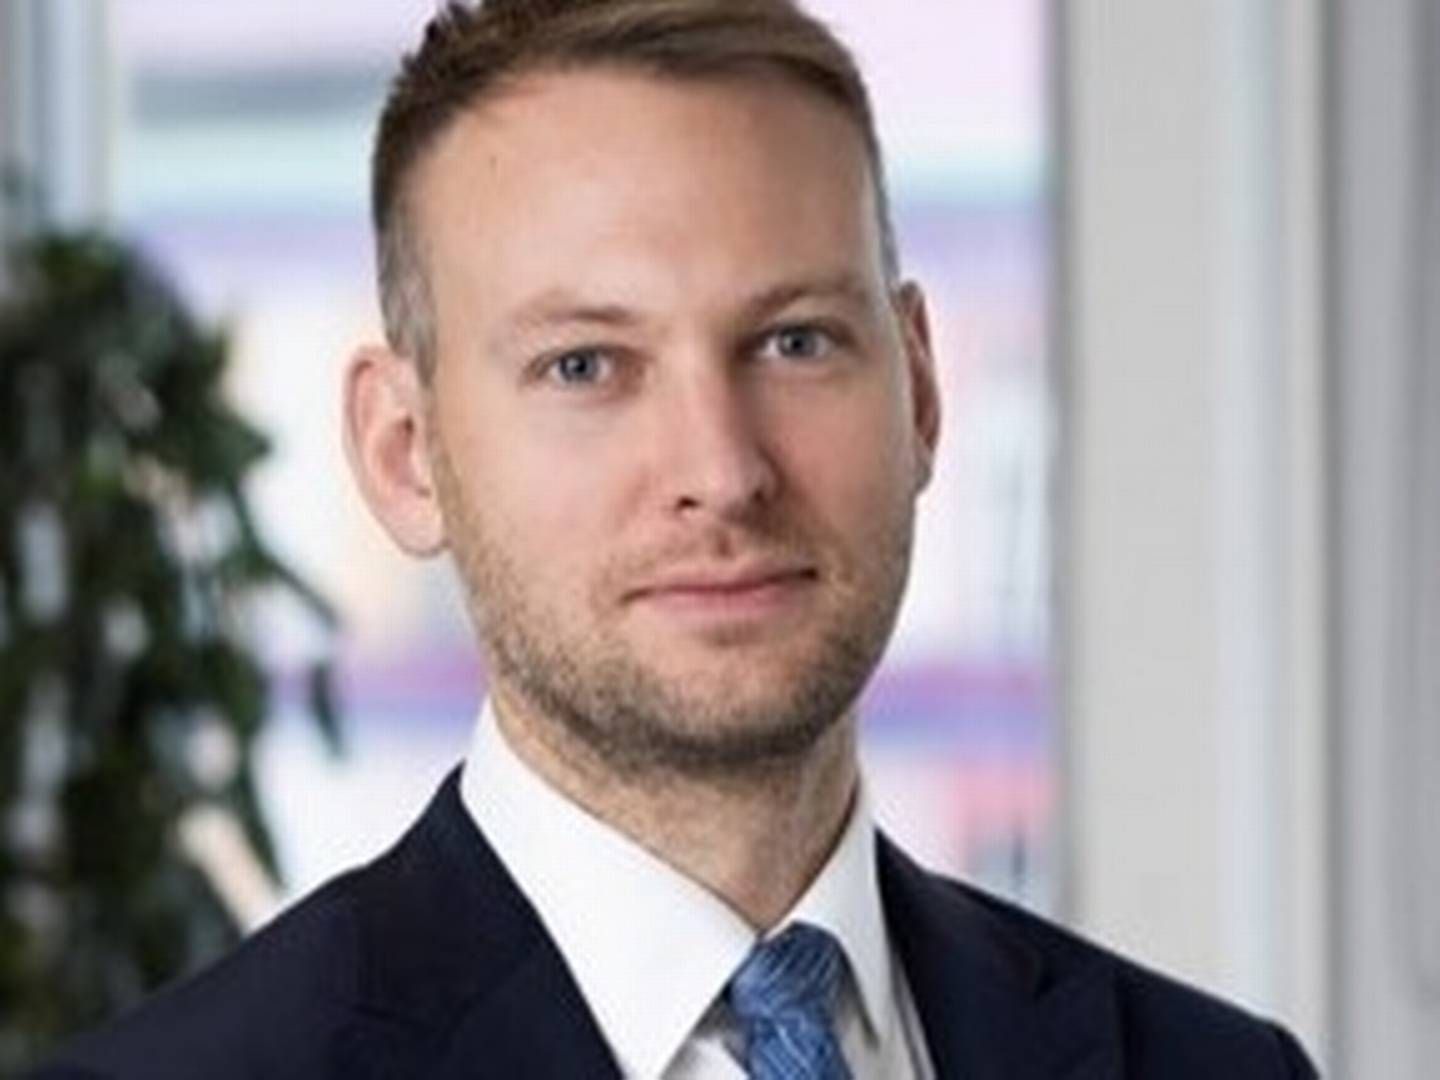 Casper Elmelund Abild er ny adm. direktør hos Core Property Management fra 1. maj, hvor han ifølge bestyrelsesformanden skal sikres manøvrerum og plads i en ellers meget ejerledet virksomhed. | Foto: PR / Nordicals